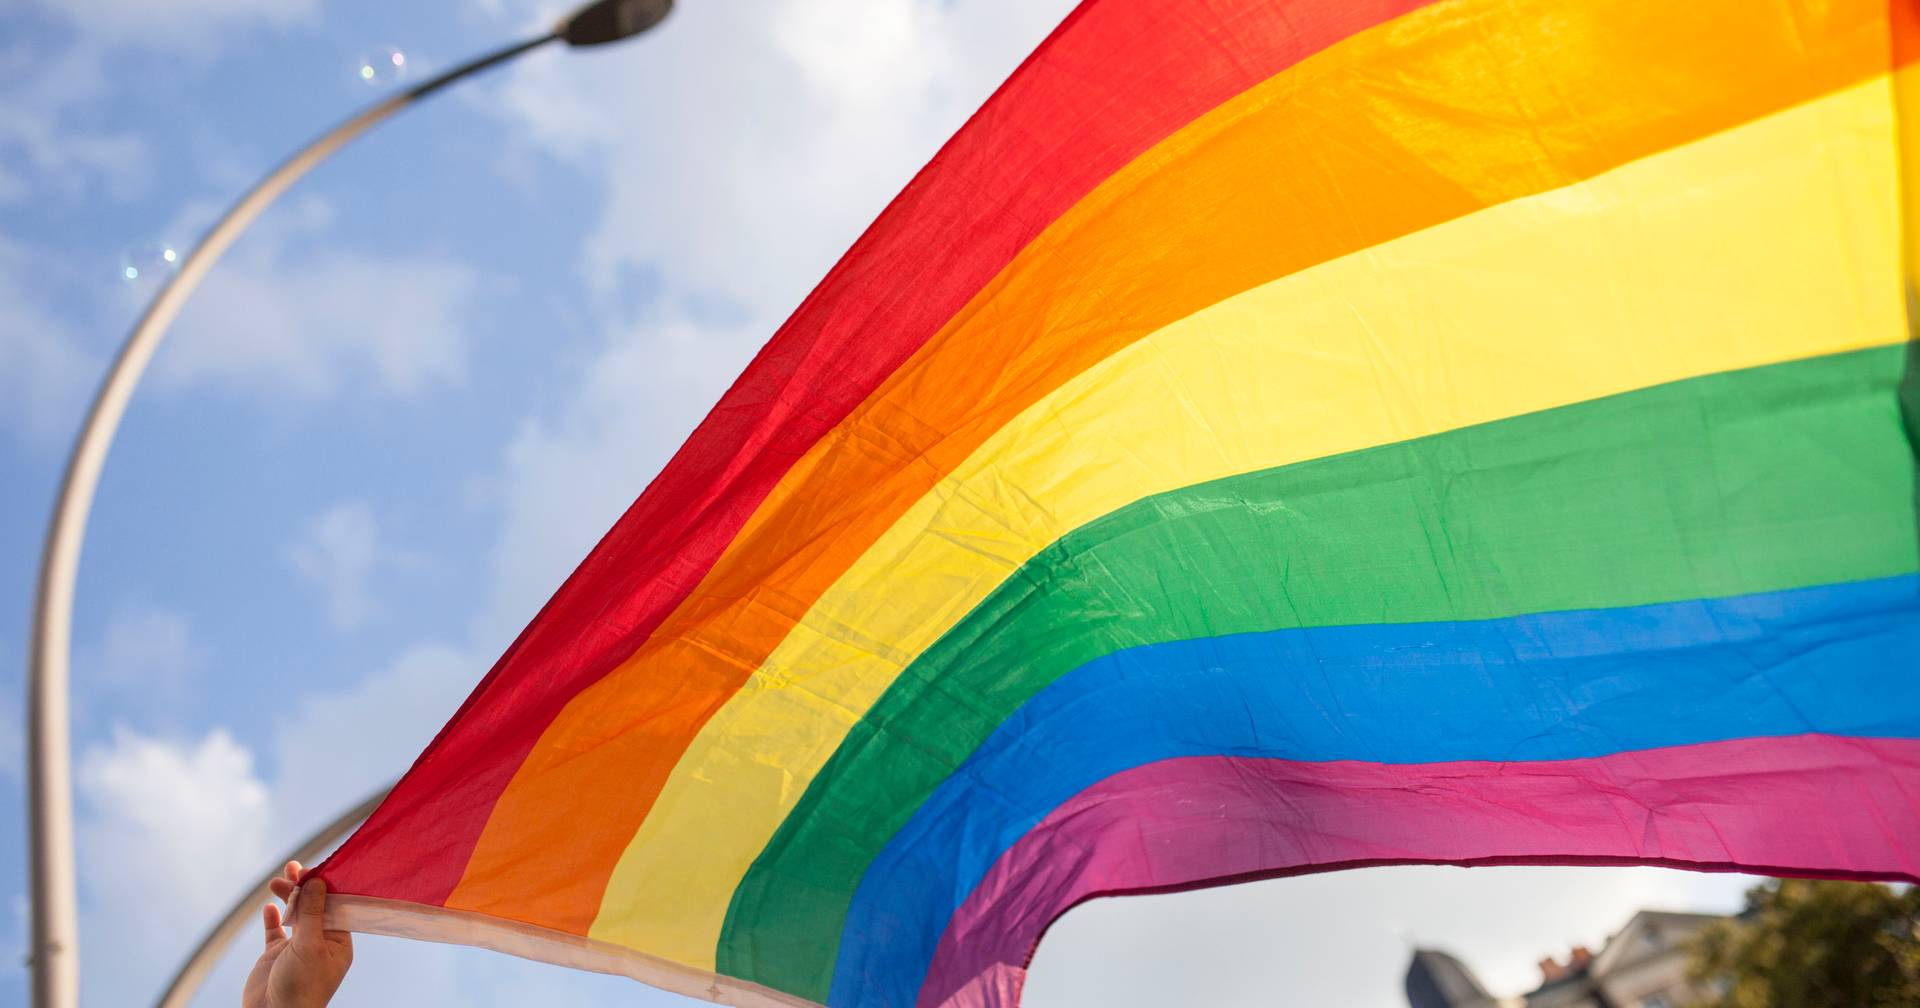 Banderas LGBTQ+ prohibidas: ‘Hay una sensación de traición’ en una ciudad musulmana estadounidense